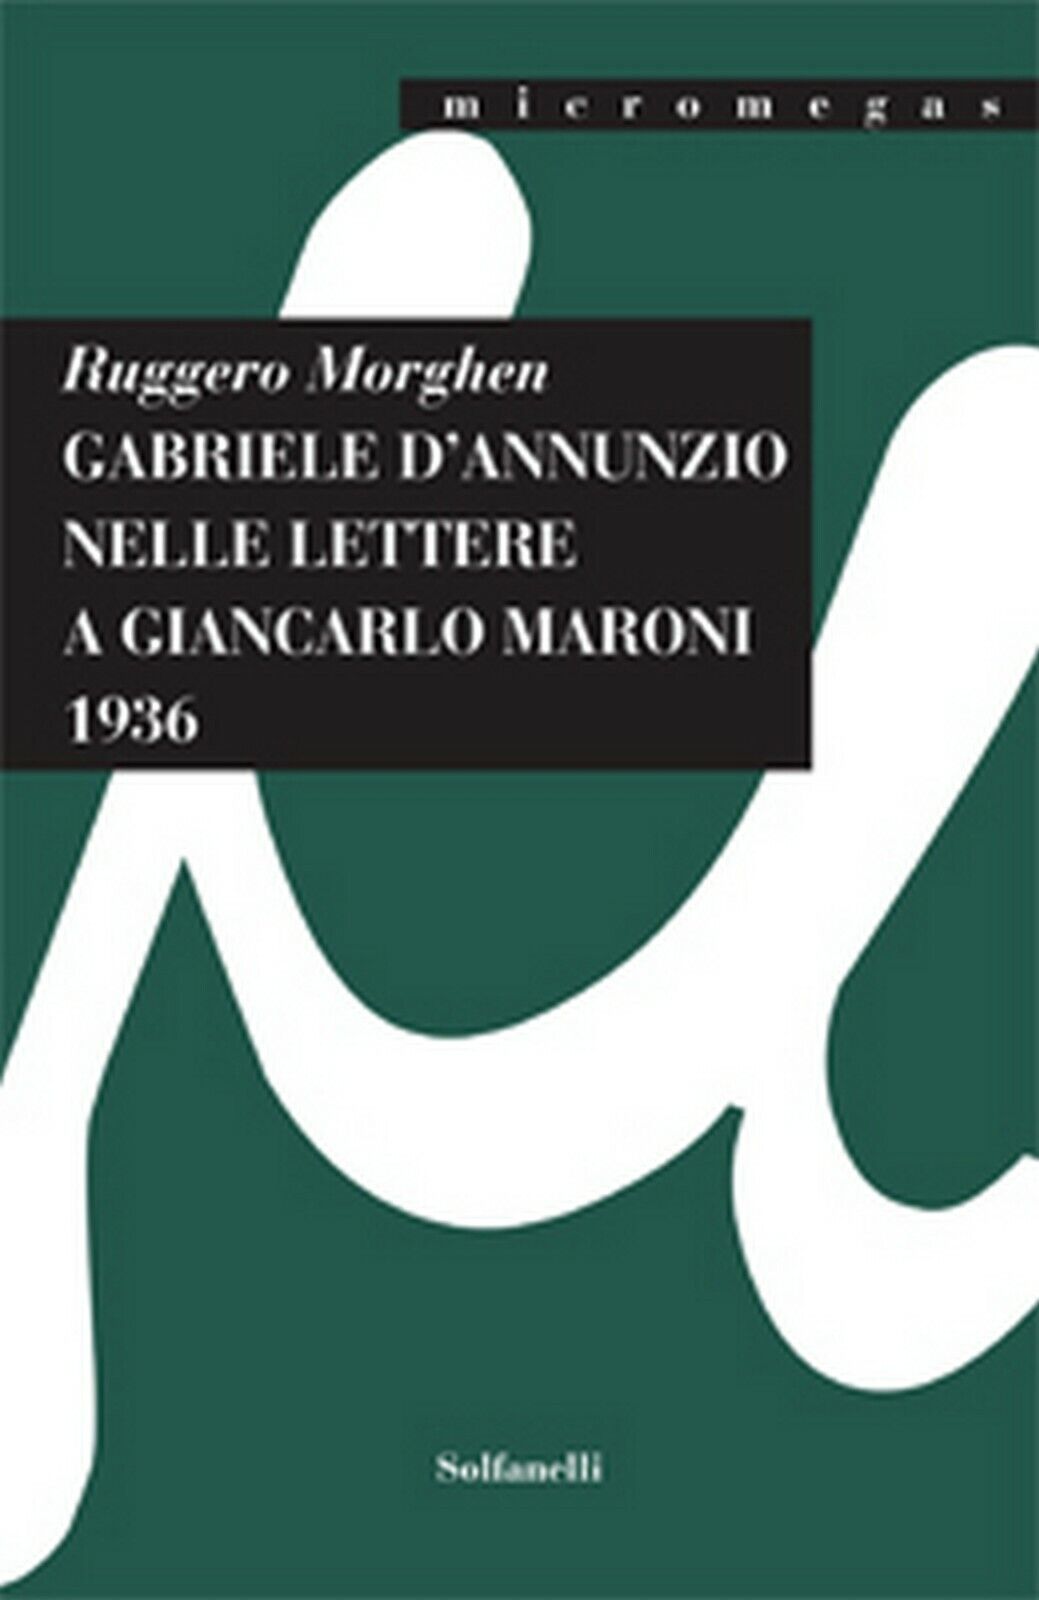 GABRIELE d'ANNUNZIO NELLE LETTERE A GIANCARLO MARONI (1936)  di Ruggero Morghen